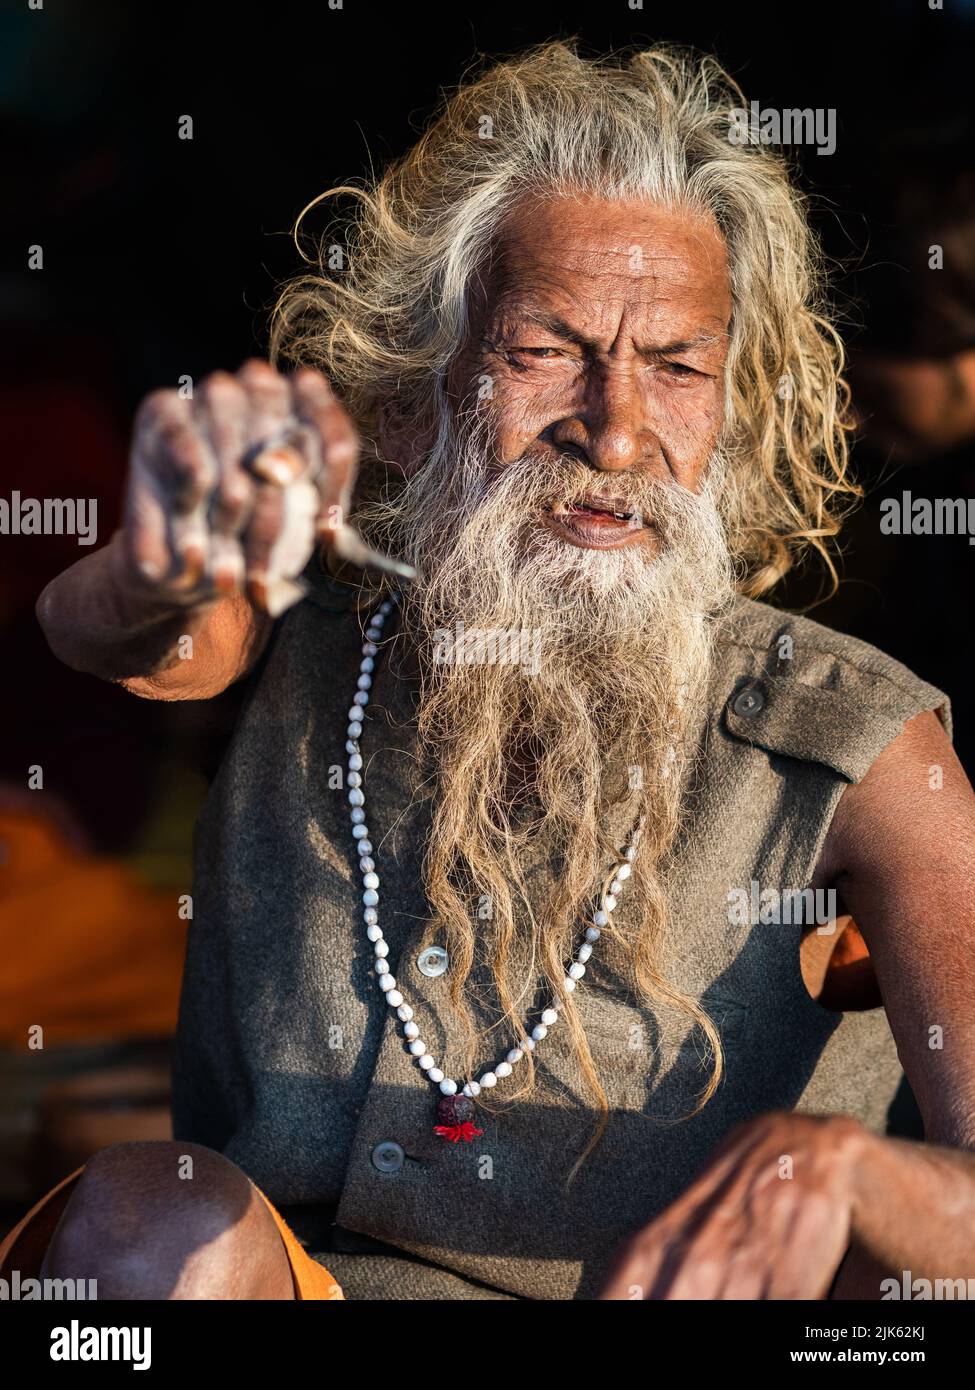 L'uomo santo indiano Amar Bharati Urdhavaahu, che ha tenuto il suo braccio sollevato per oltre 40 anni in onore del Dio indù Shiva, al Festival Kumbh Mela in India. Foto Stock